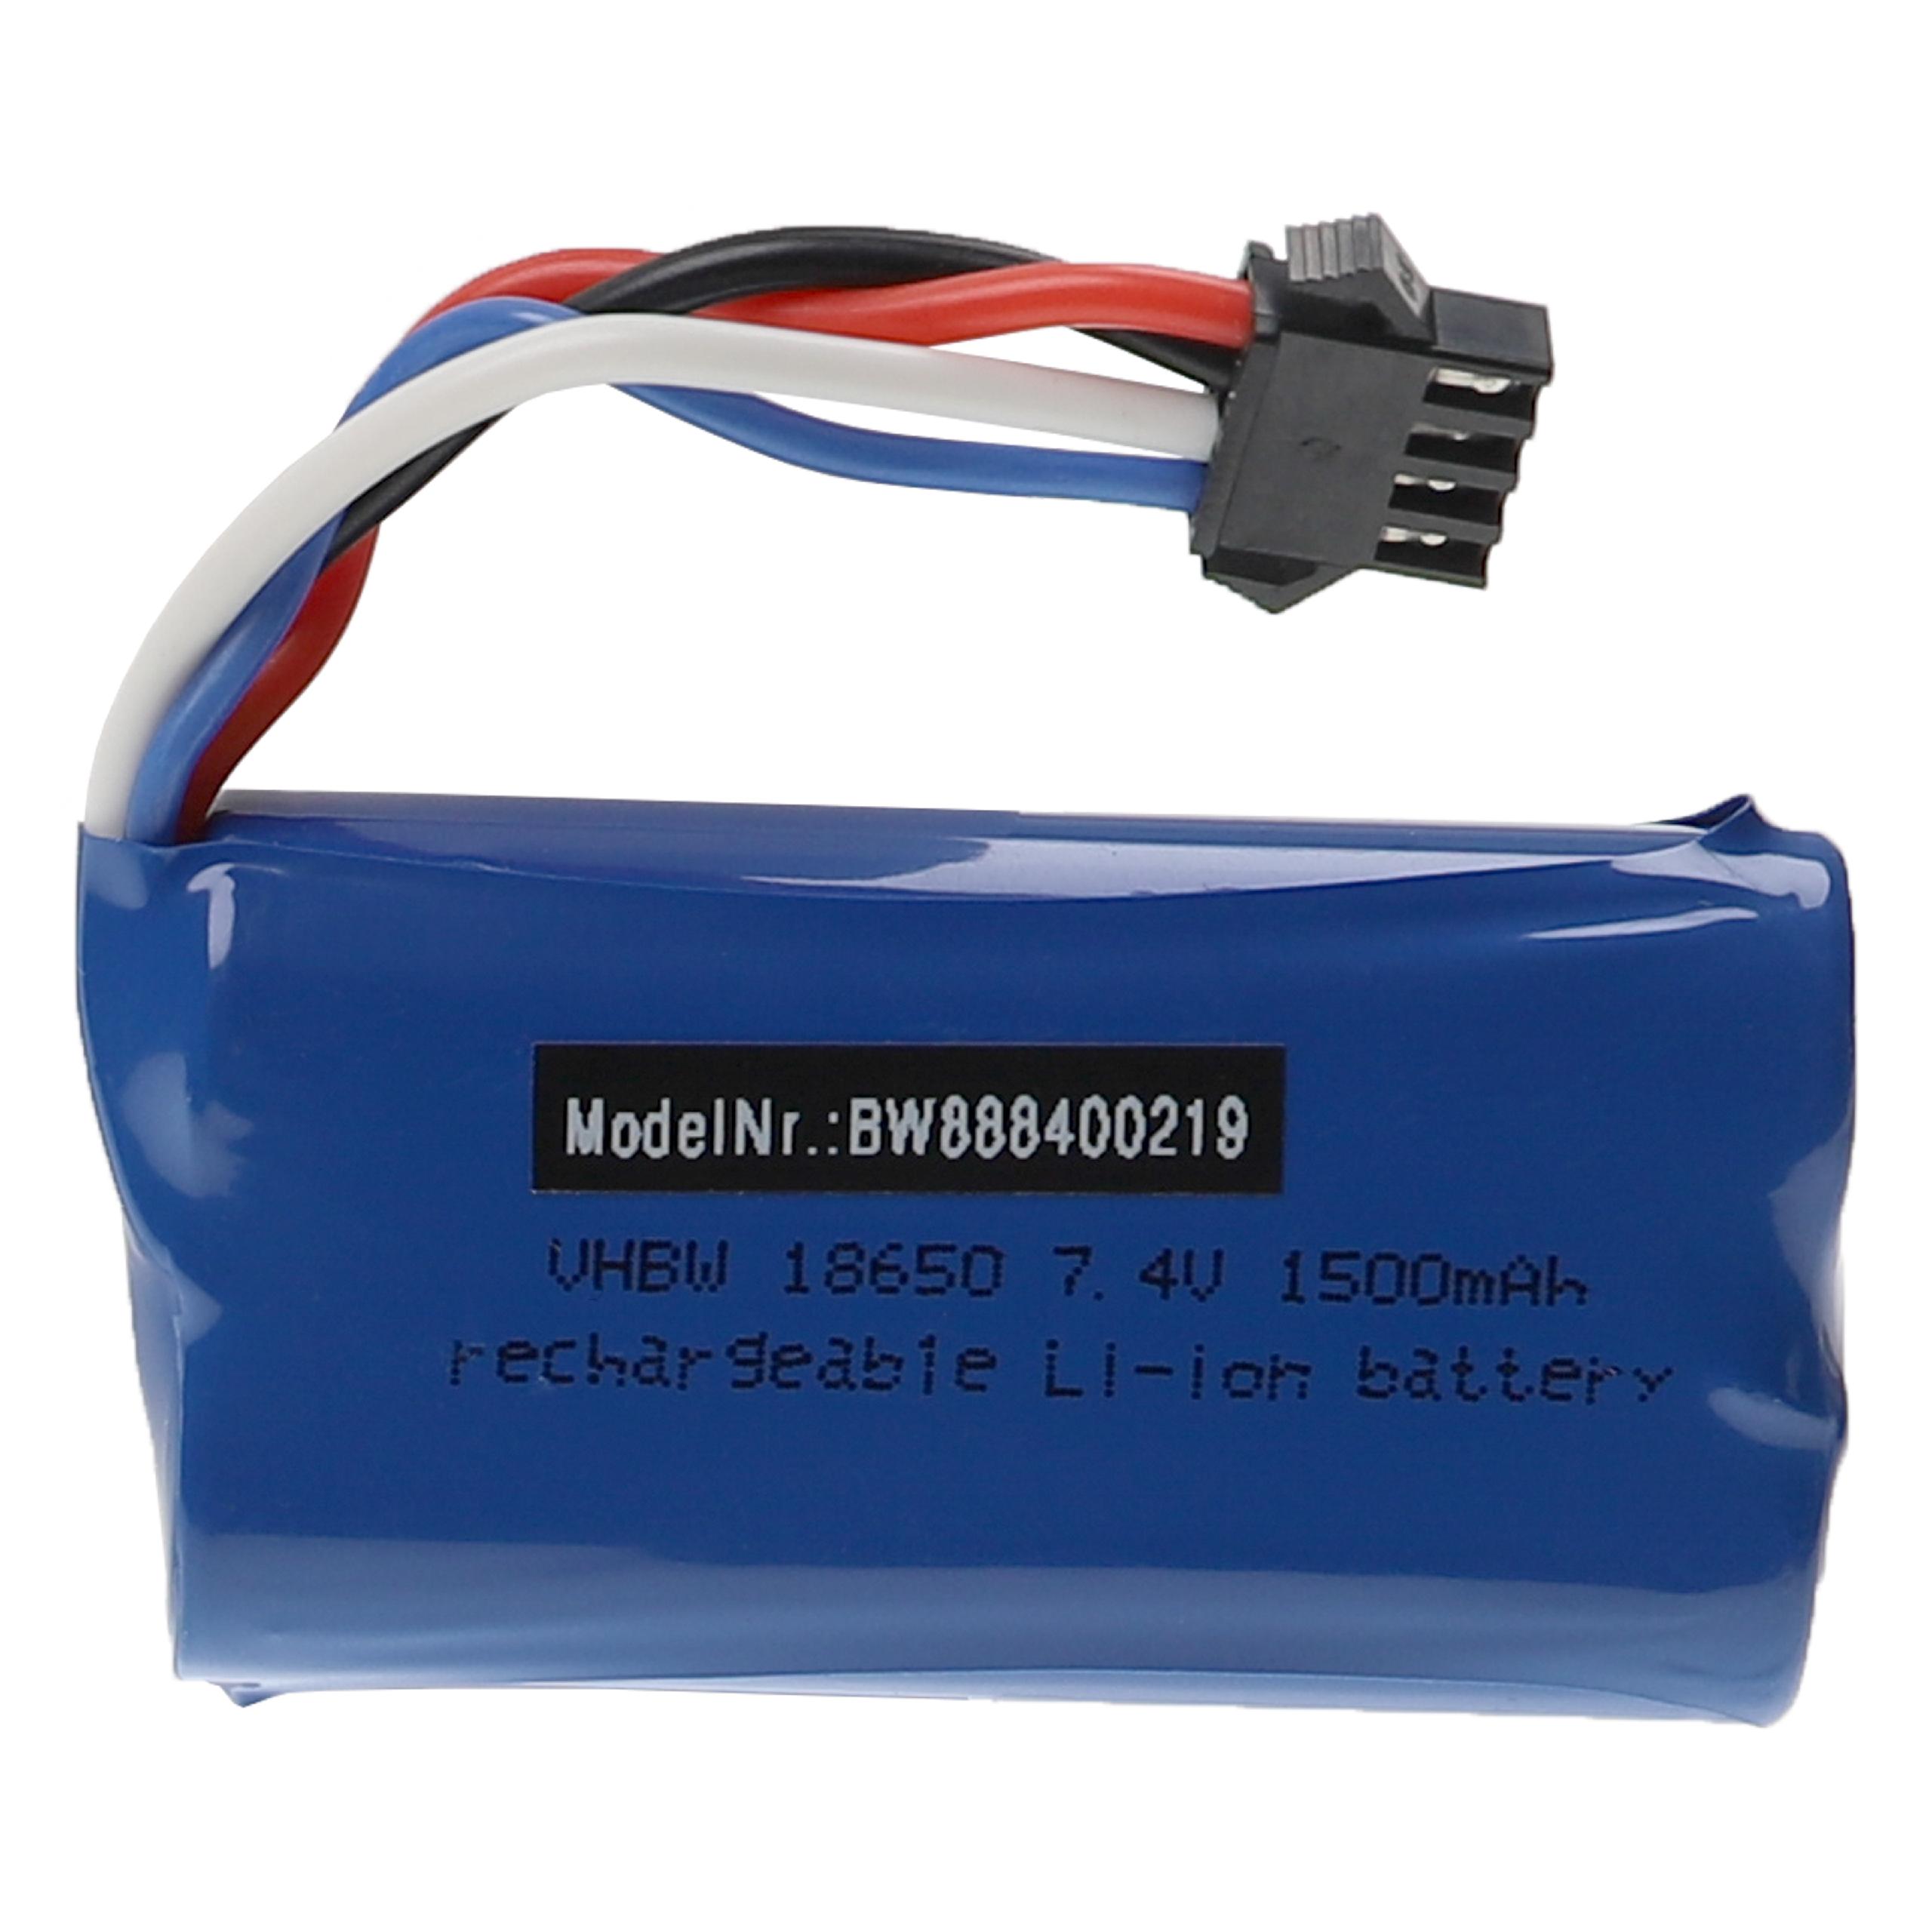 Batterie pour UDI 002, 902 / Huanqi 961, 962 pour modèle radio-télécommandé - 1500mAh 7,4V Li-ion, connecteur 